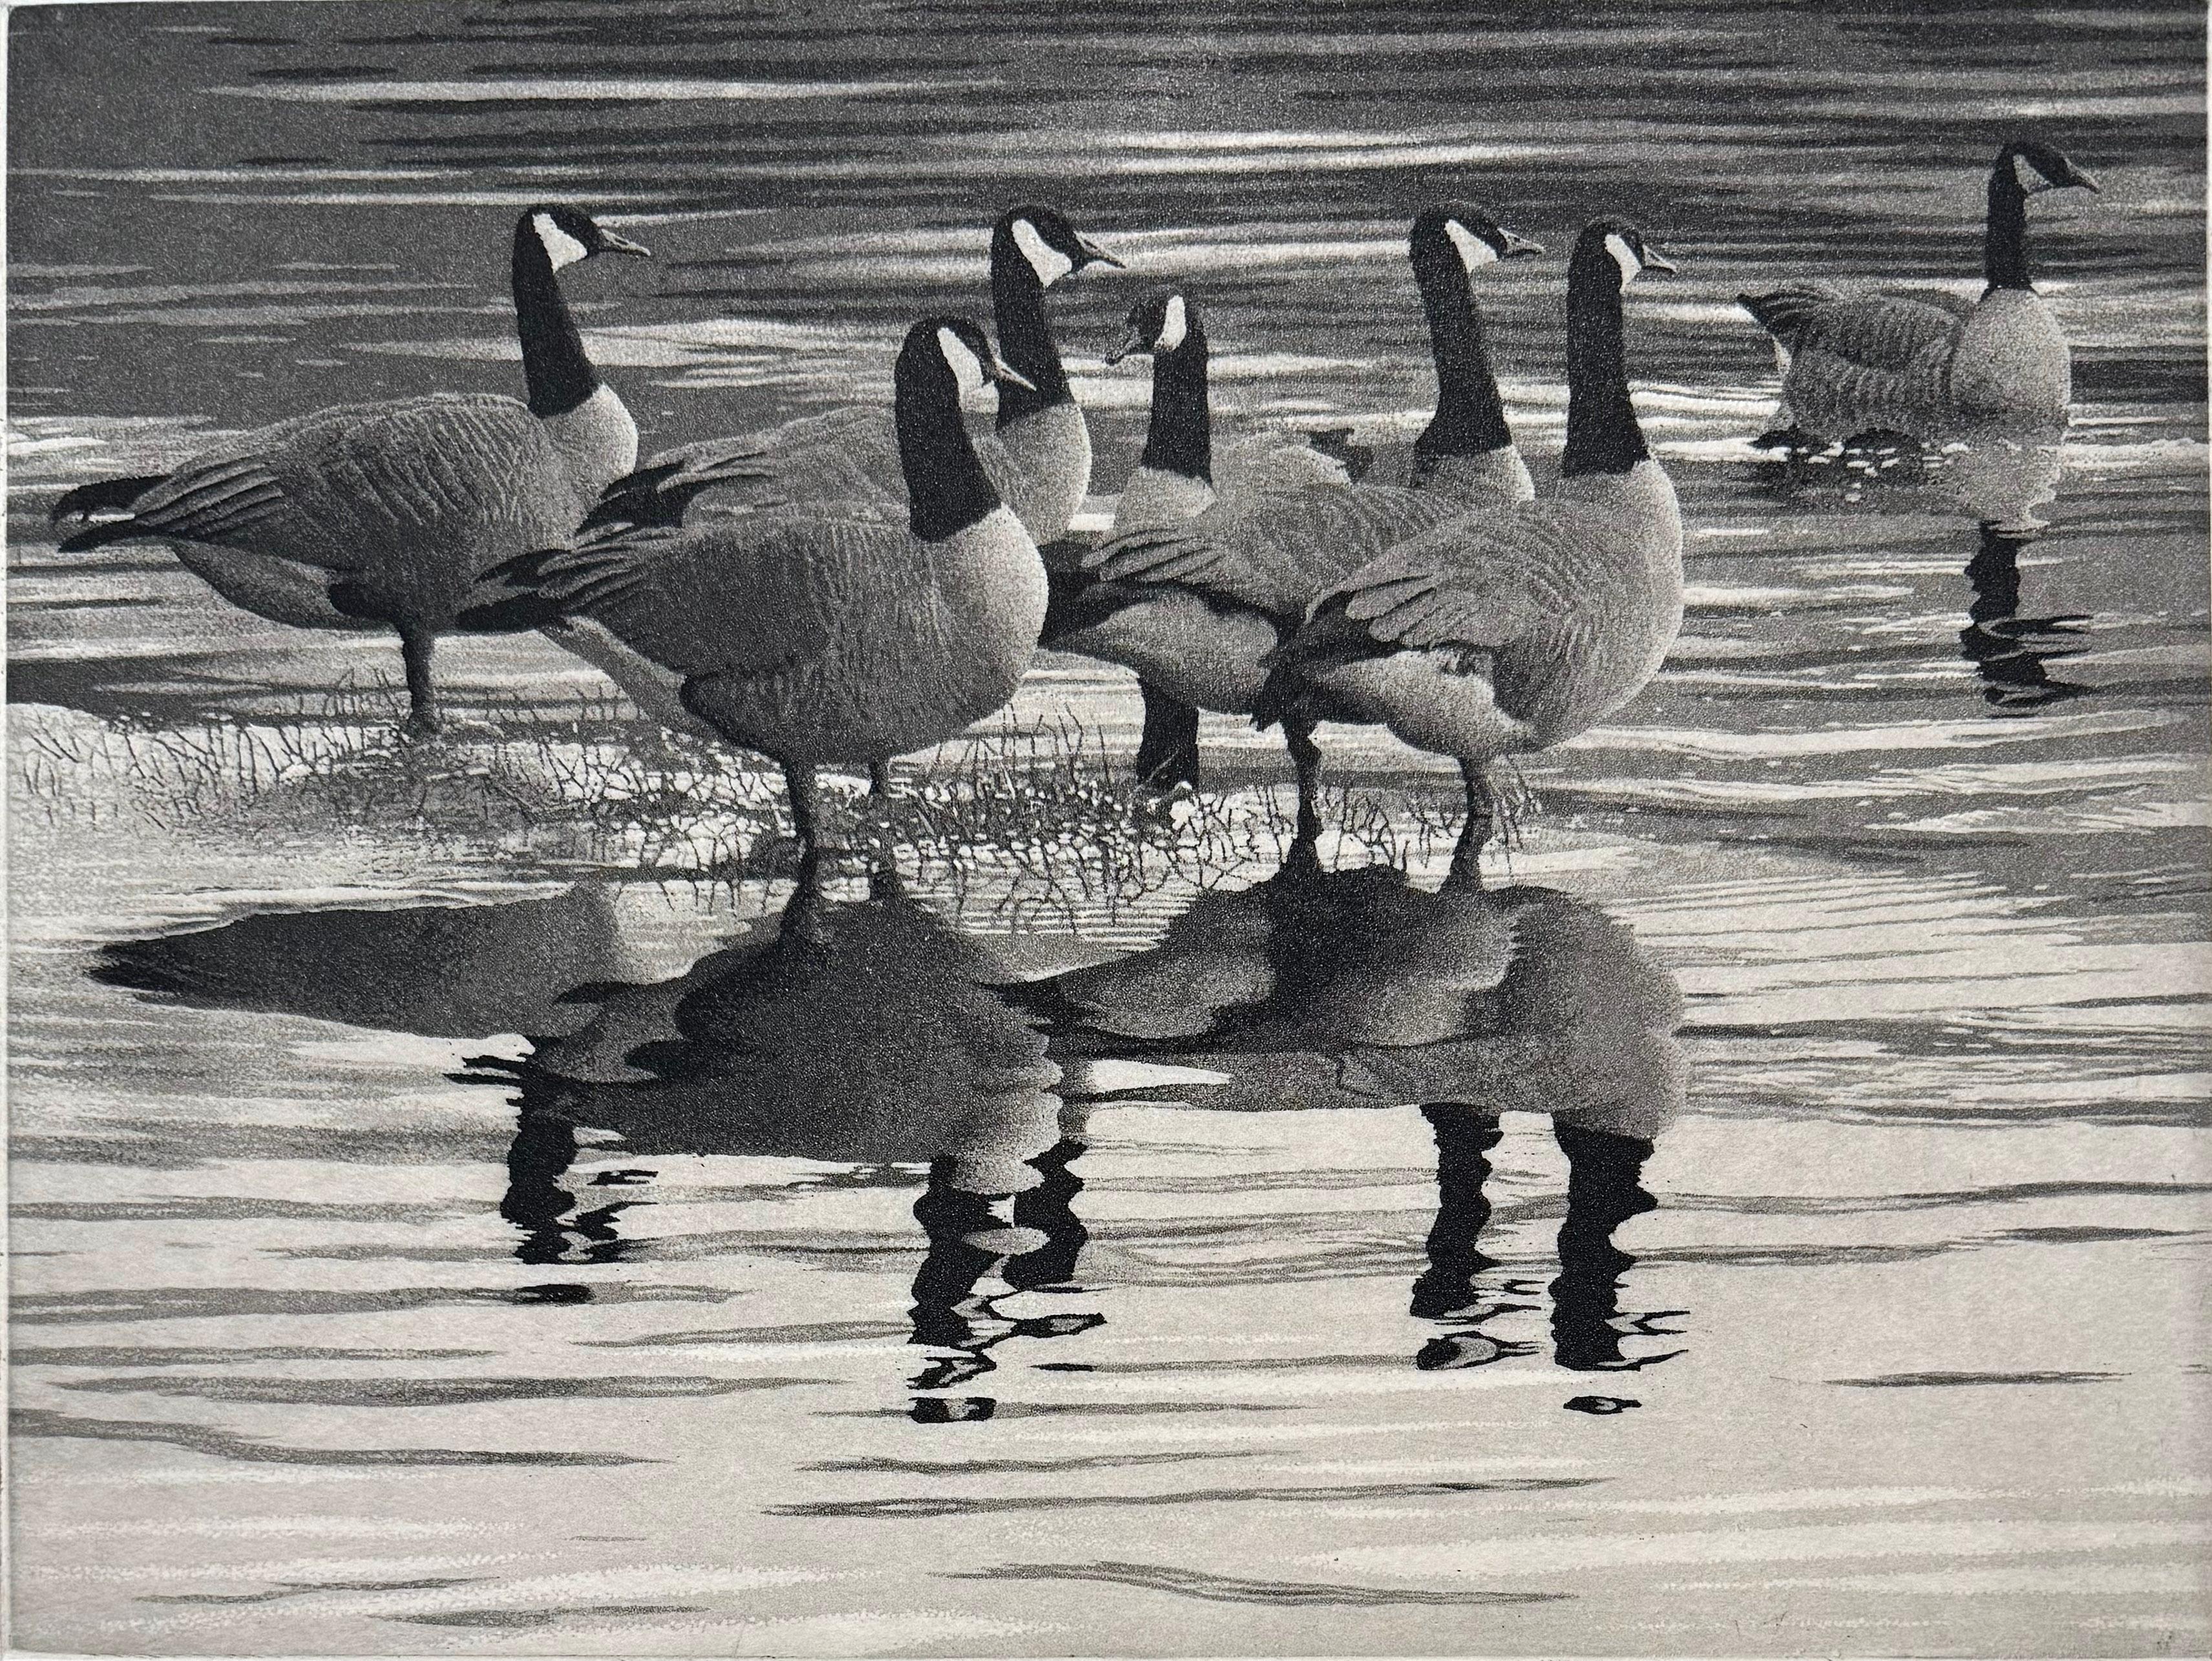 Medium: Radierung und Aquatinta
Auflage von 250 Stück
Jahr: 2014
Bildgröße: 9 x 12 Zoll
Signiert, betitelt und nummeriert vom Künstler.

Inspiriert von einer Szene mit sieben Kanadagänsen im Lake Padden, Bellingham, WA. Dies ist ein perfektes